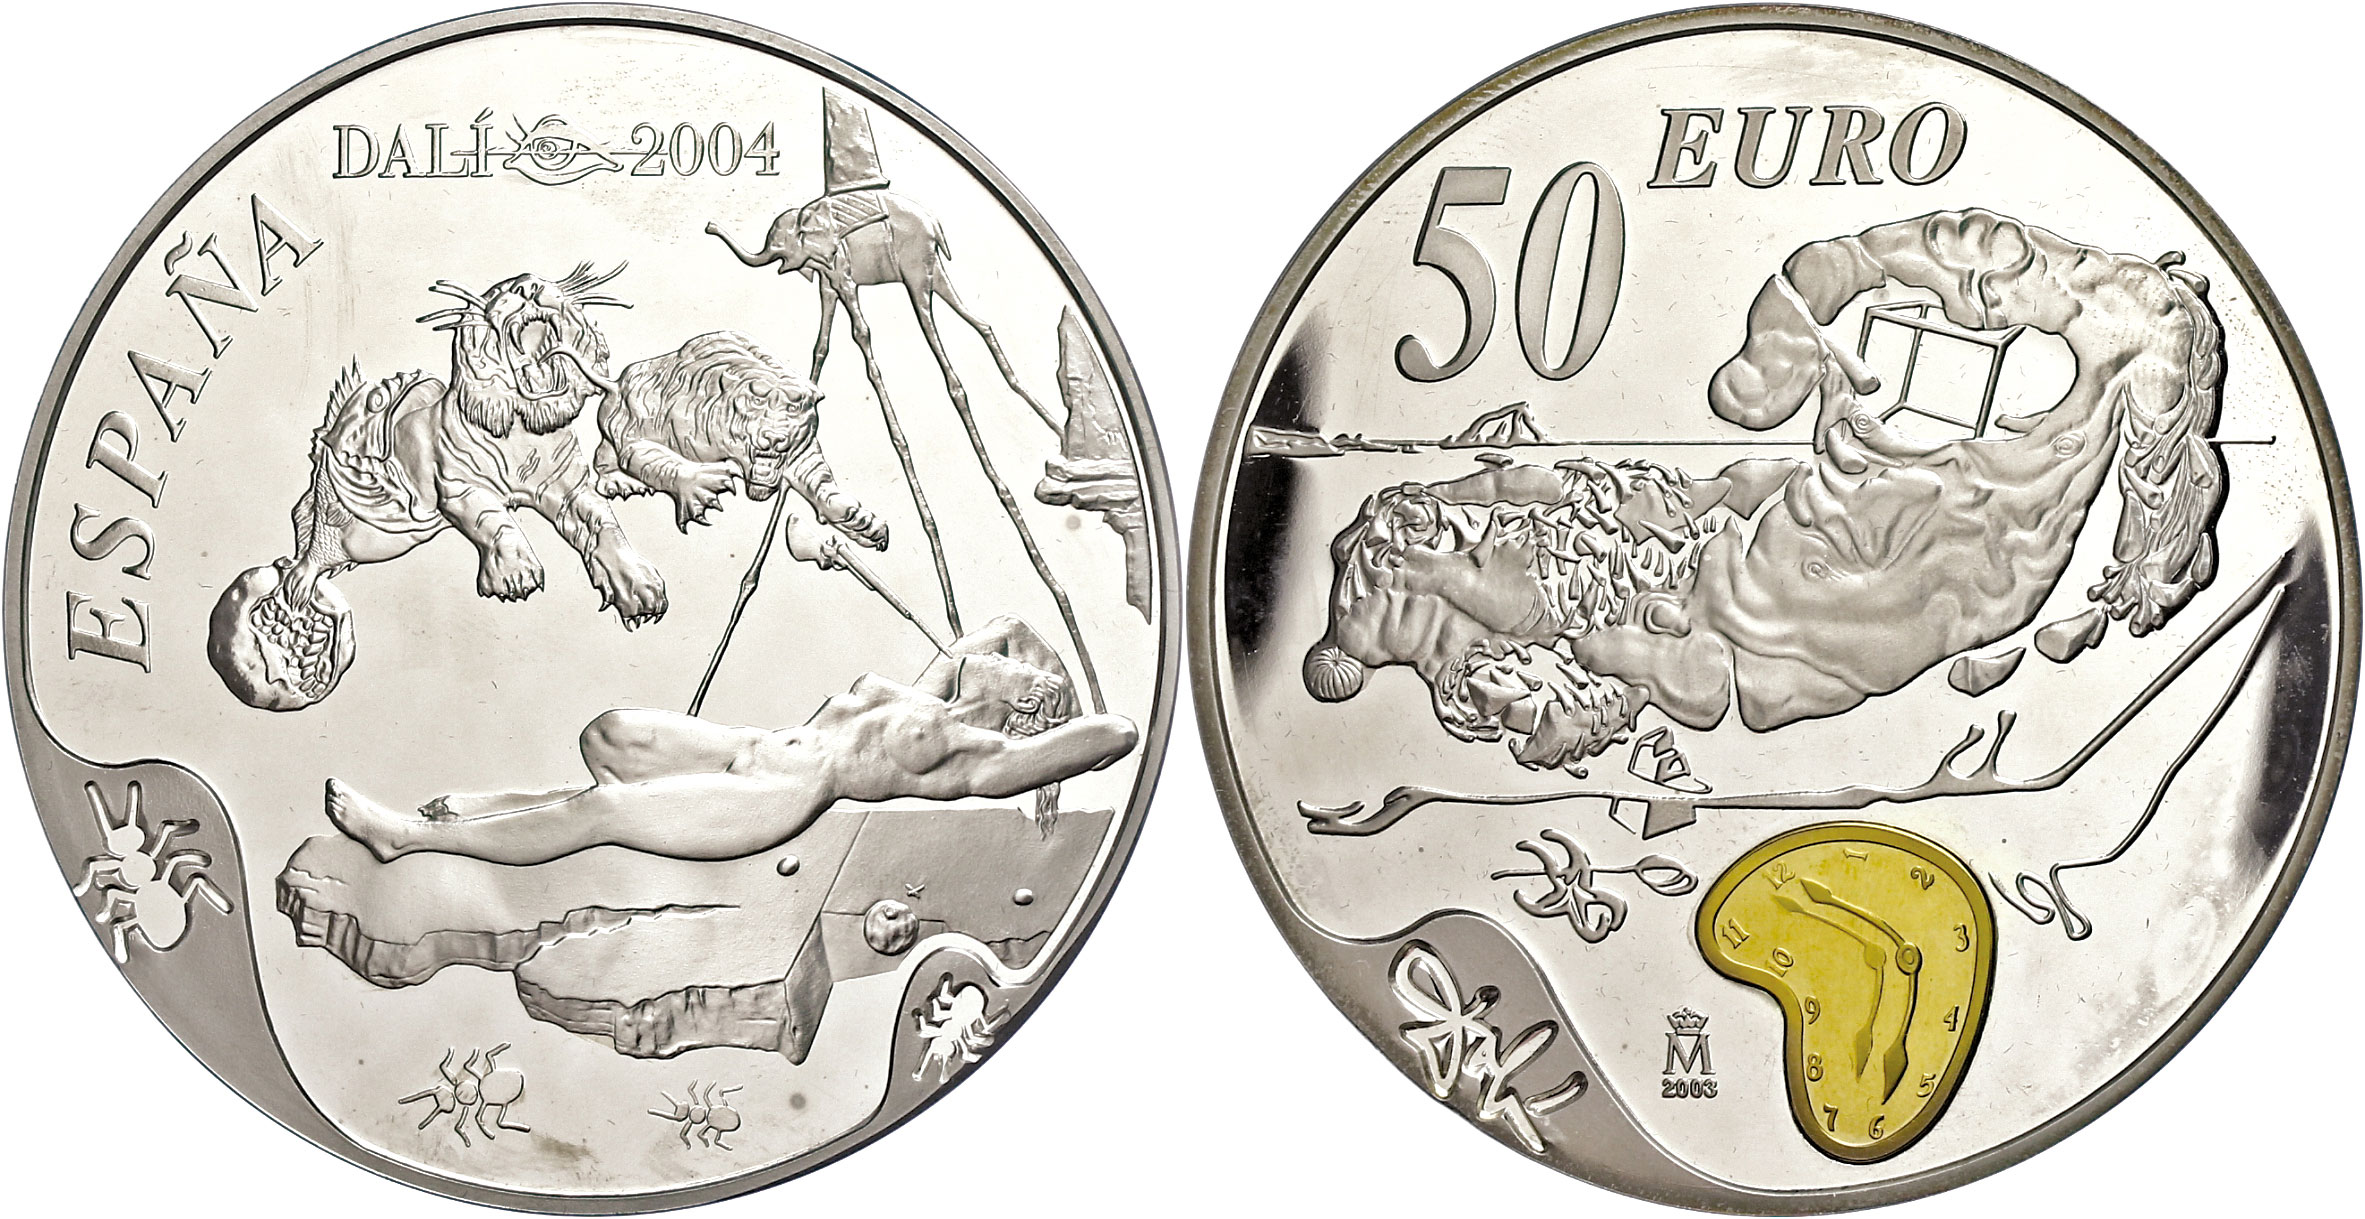 Сон дают монету. Espana Dali 2004 год 50 Euro монета. 50 Евро монето Испан. Серебряная монета 150 евро. Монету 5 евро 2004 года.